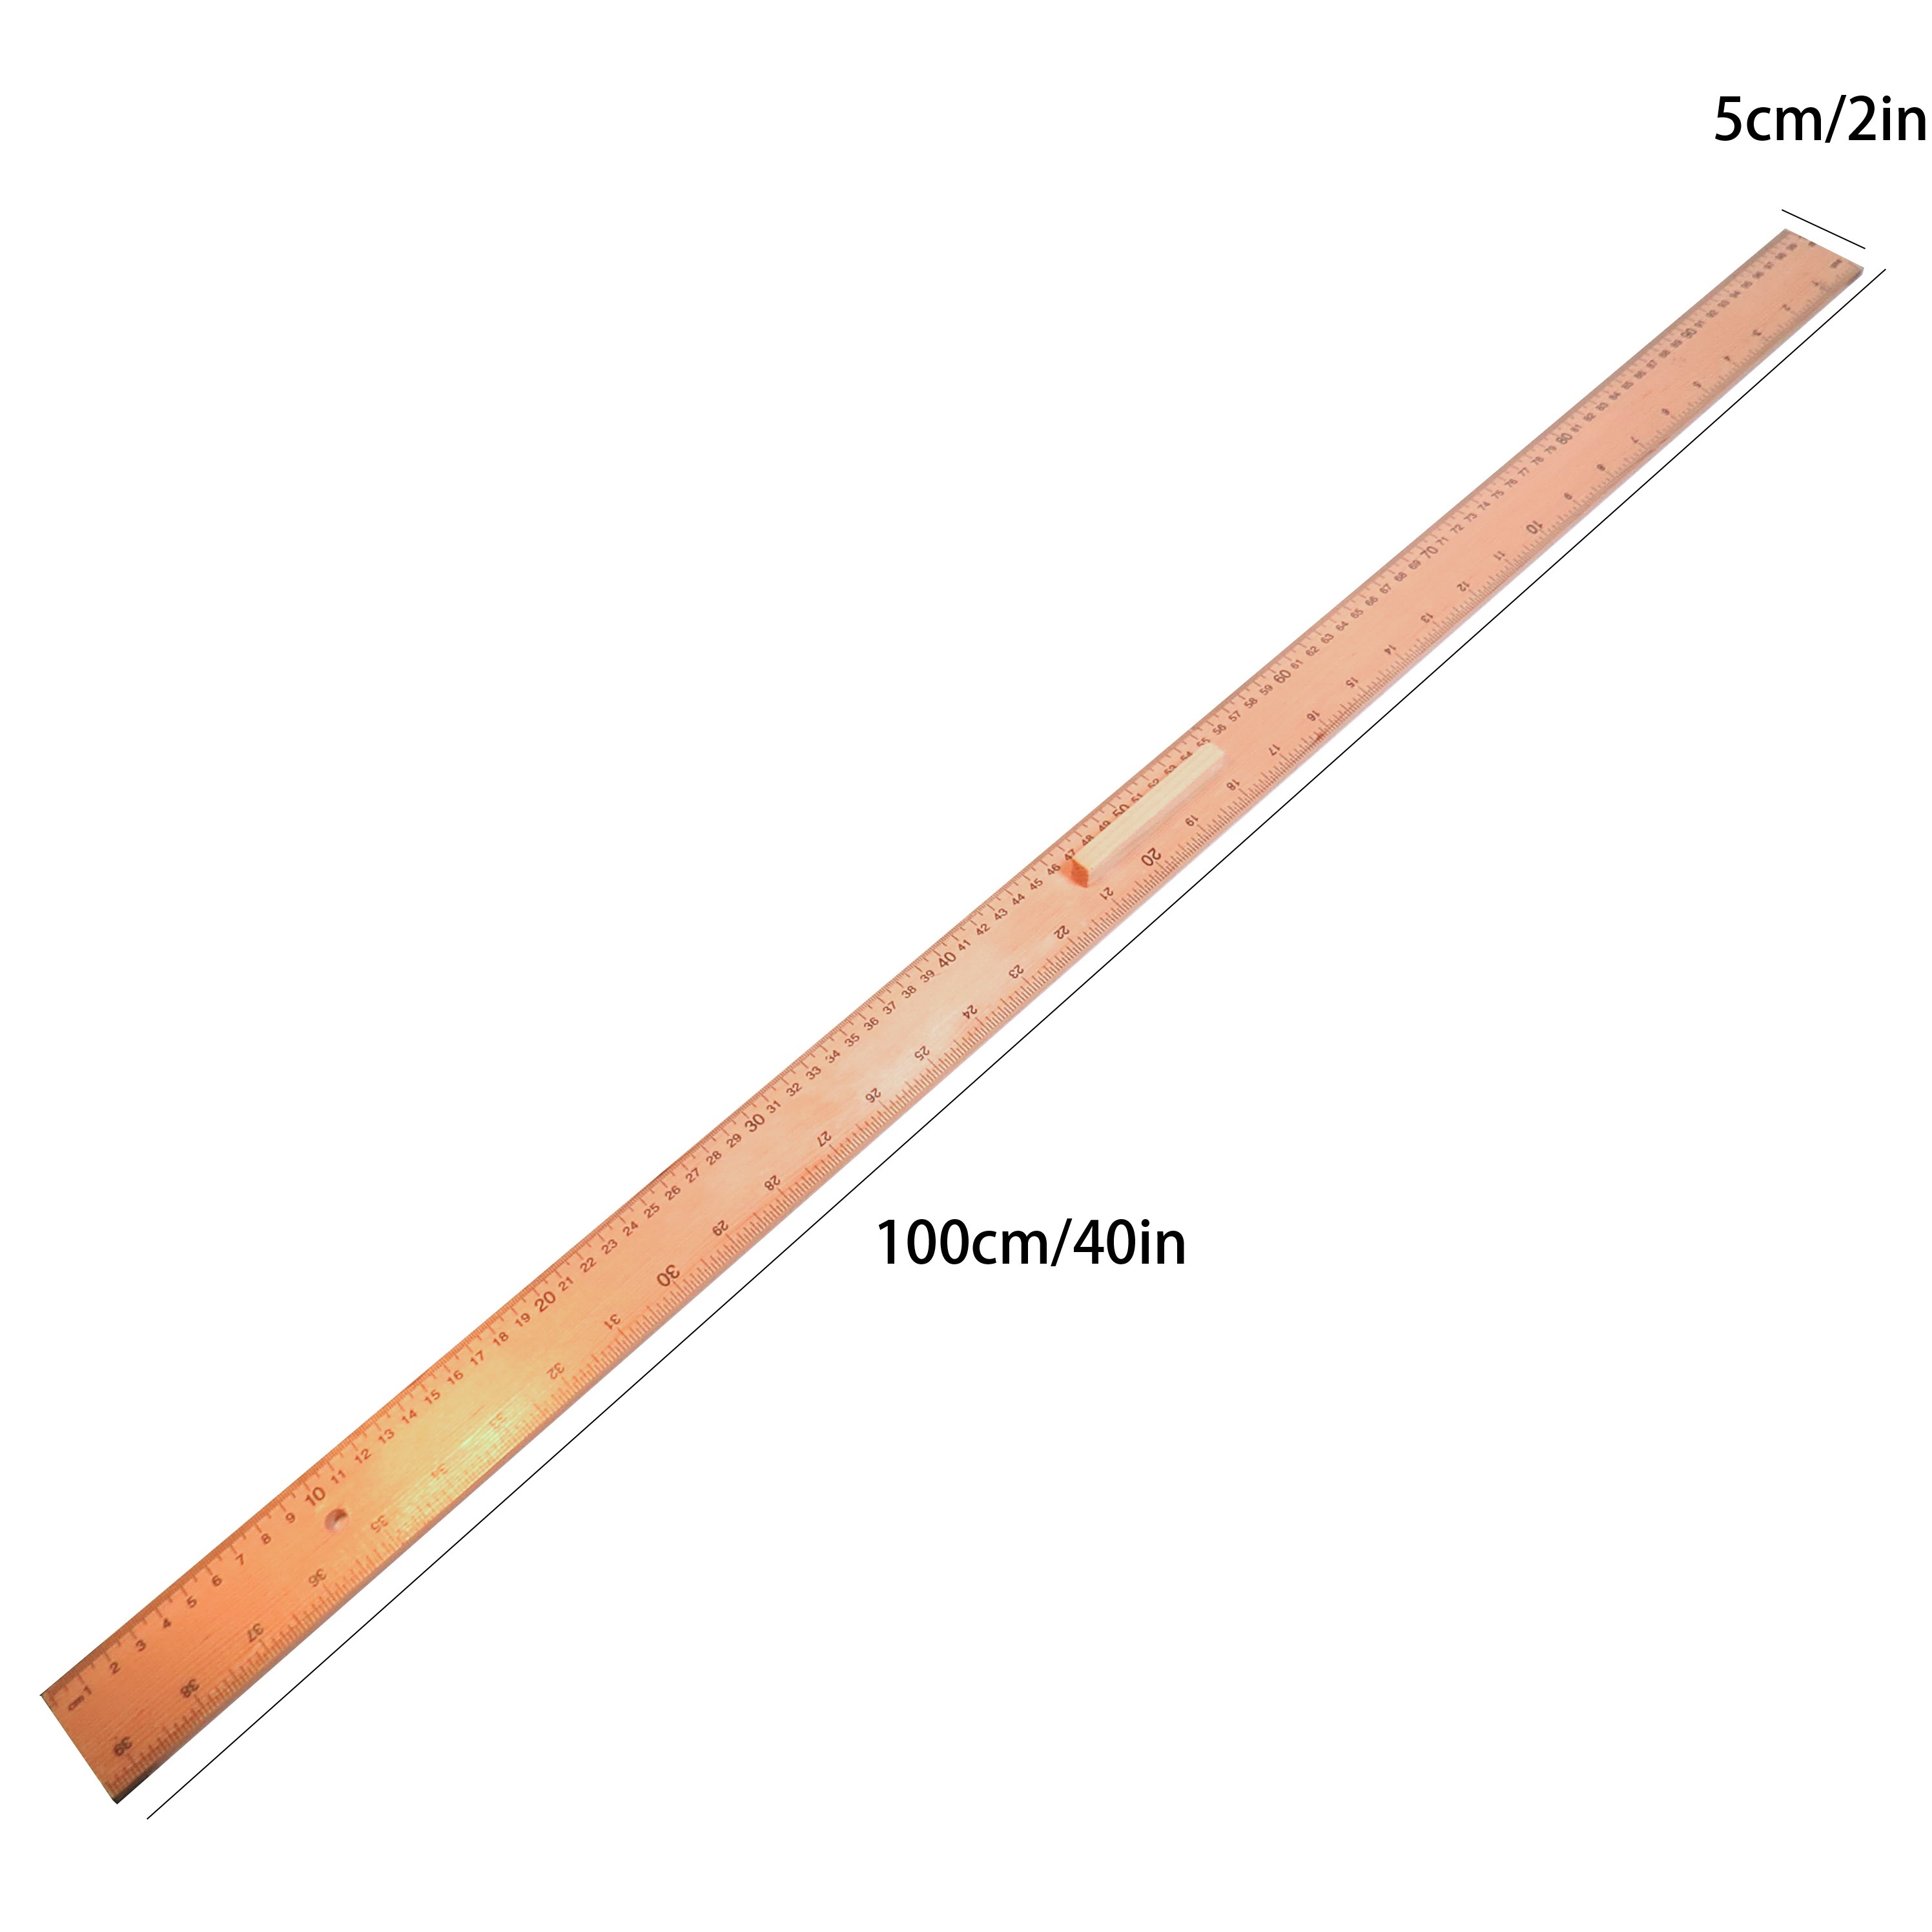 Regla de costura de madera ancha (1 metro) - Truben